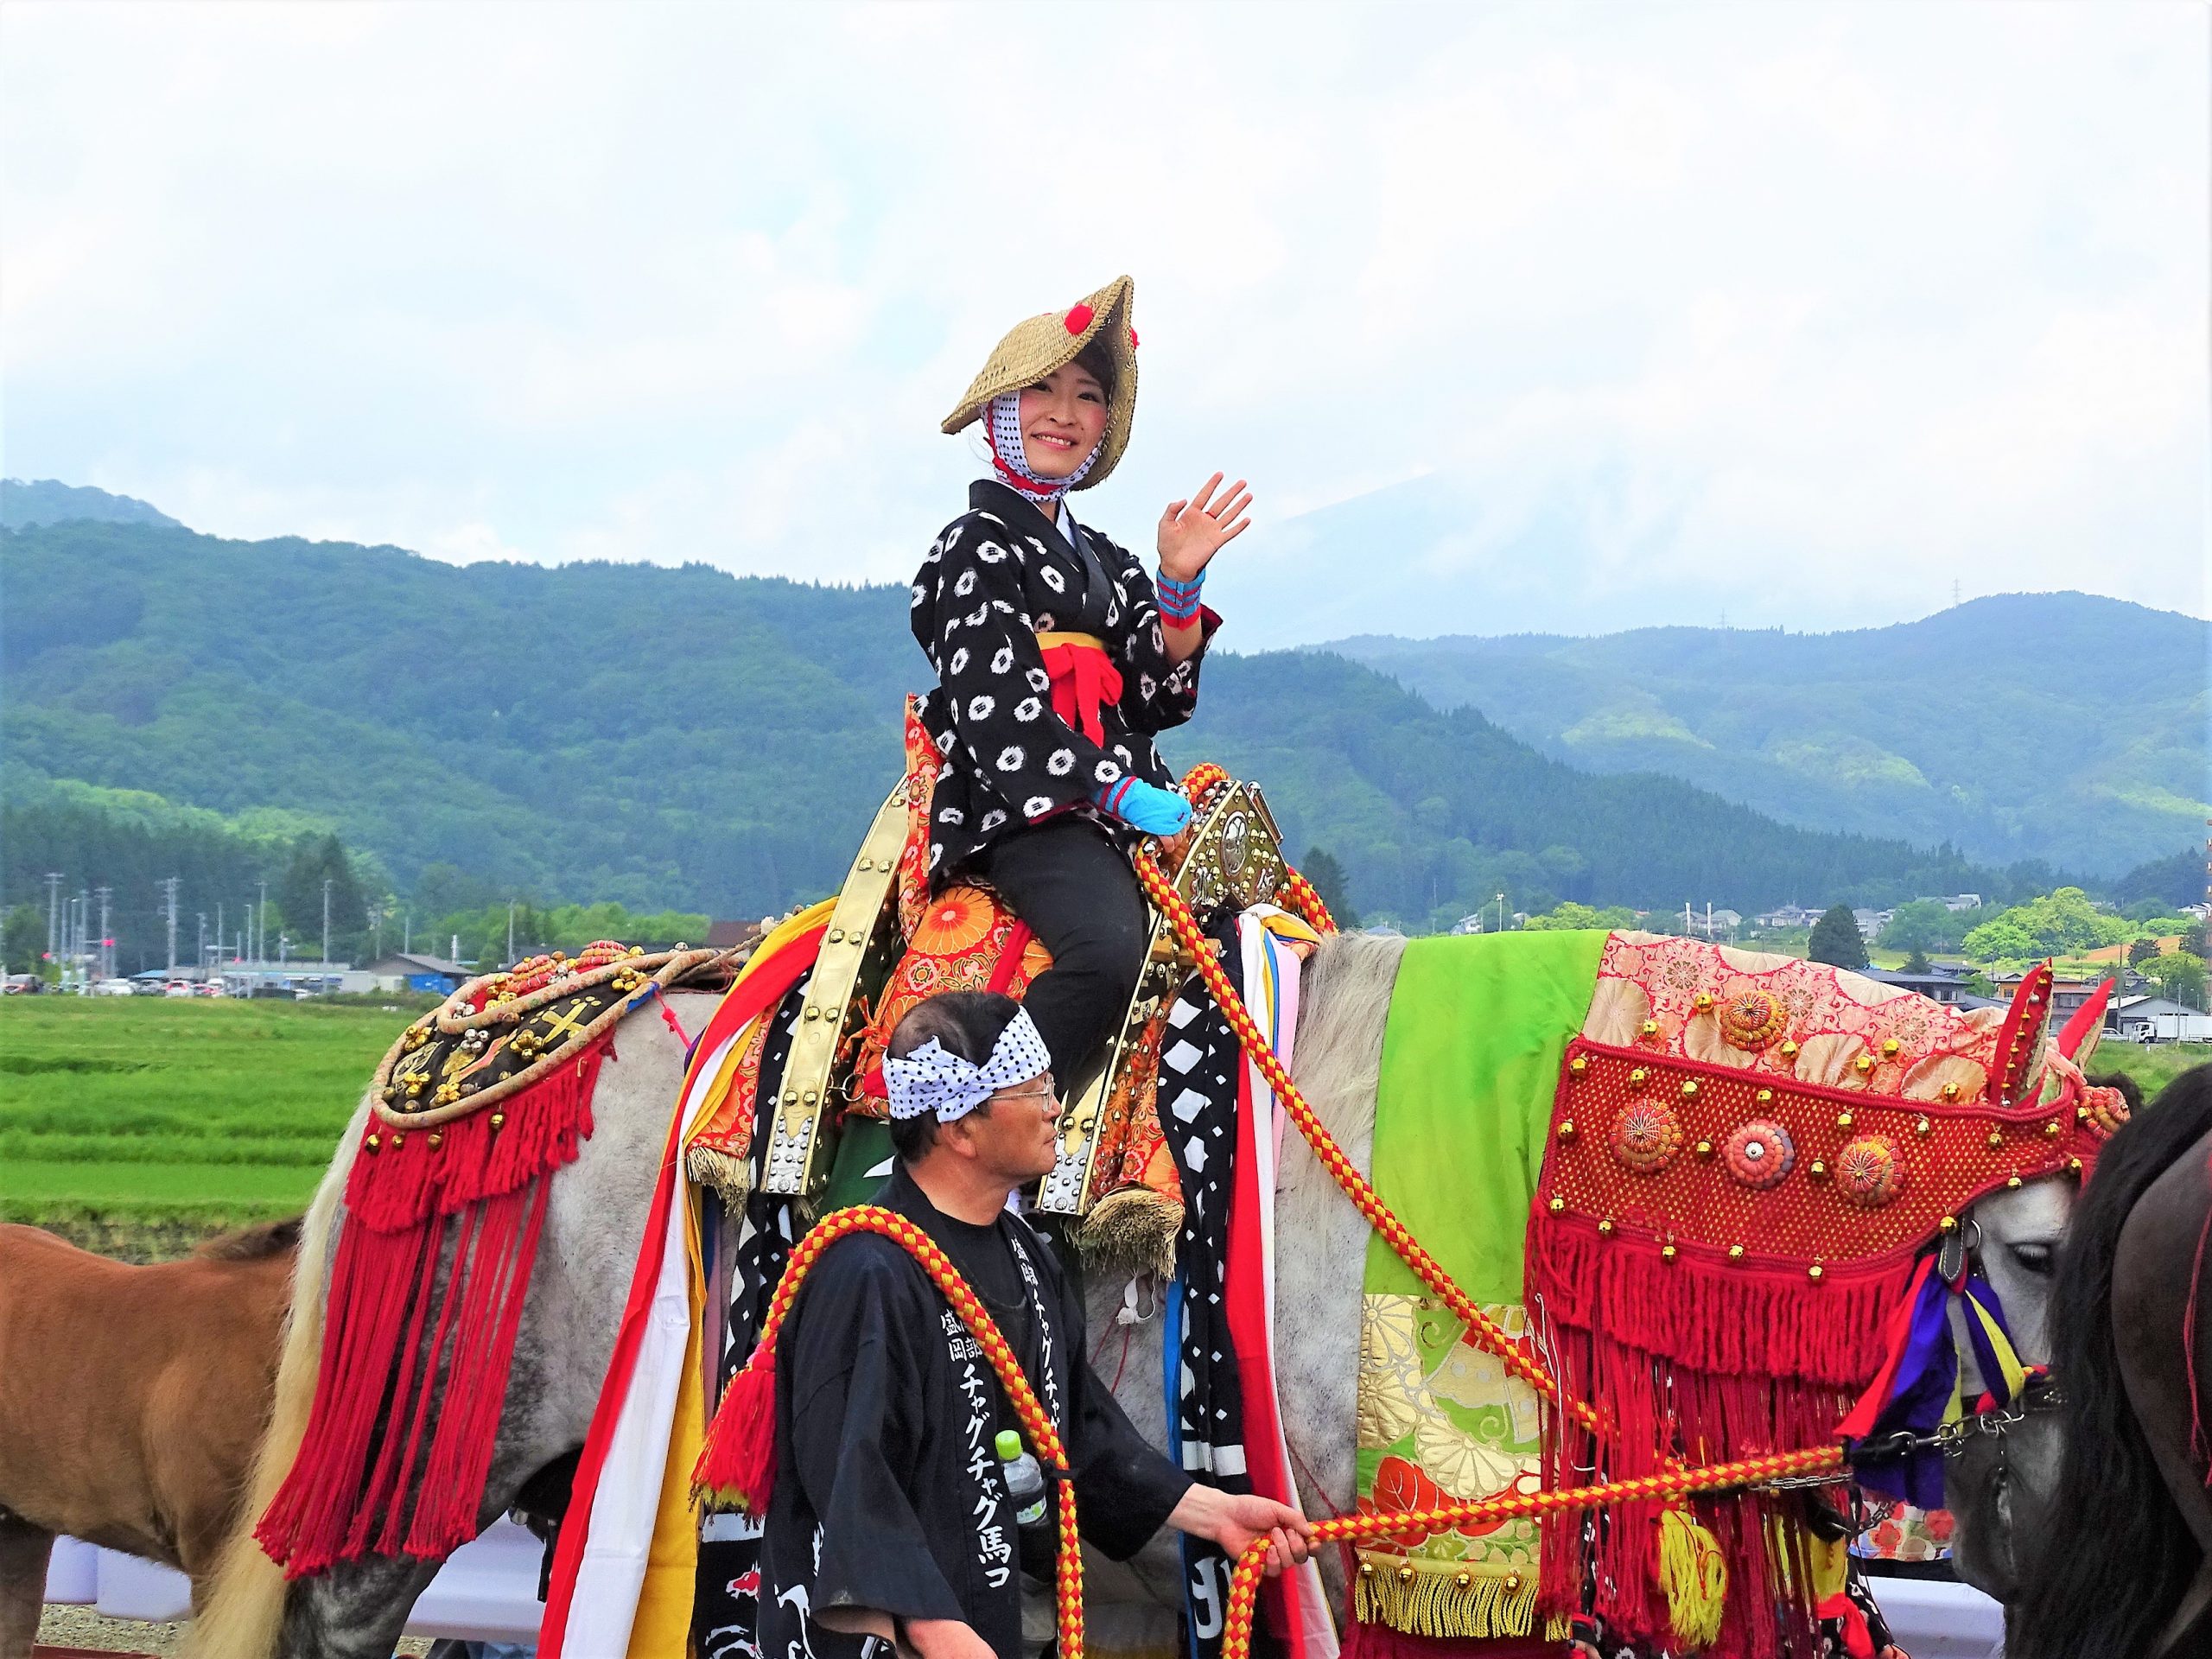 いつまでも残してほしい伝統行事「チャグチャグ馬コ」【岩手県】 日本に、もっと恋する旅